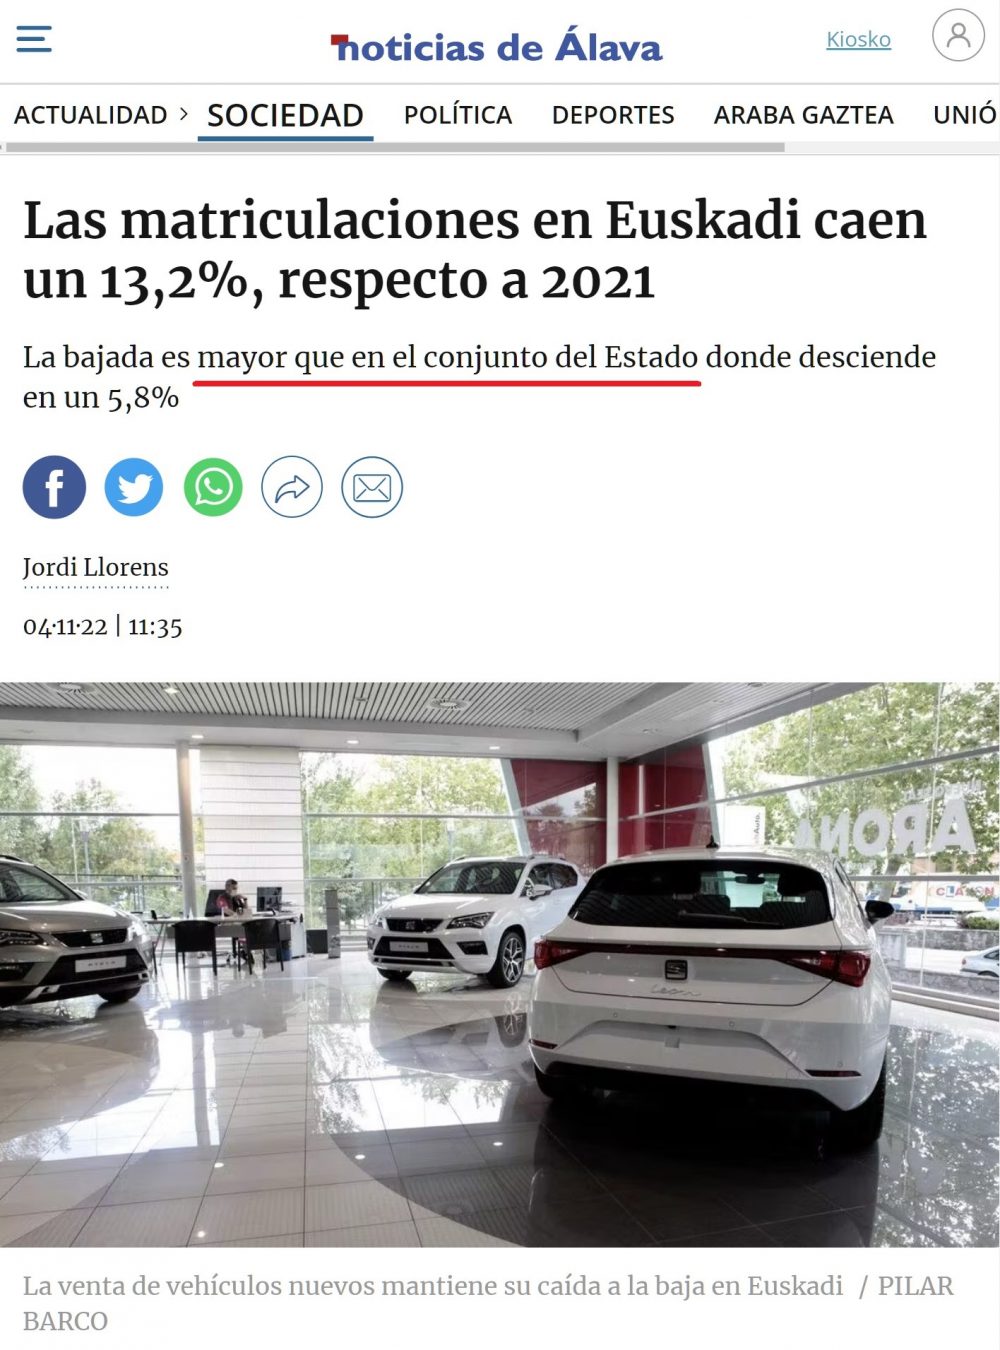 ¿Sabías que algunos medios vascos aún utilizan la palabra "Estado" en lugar de "España" o "País"?